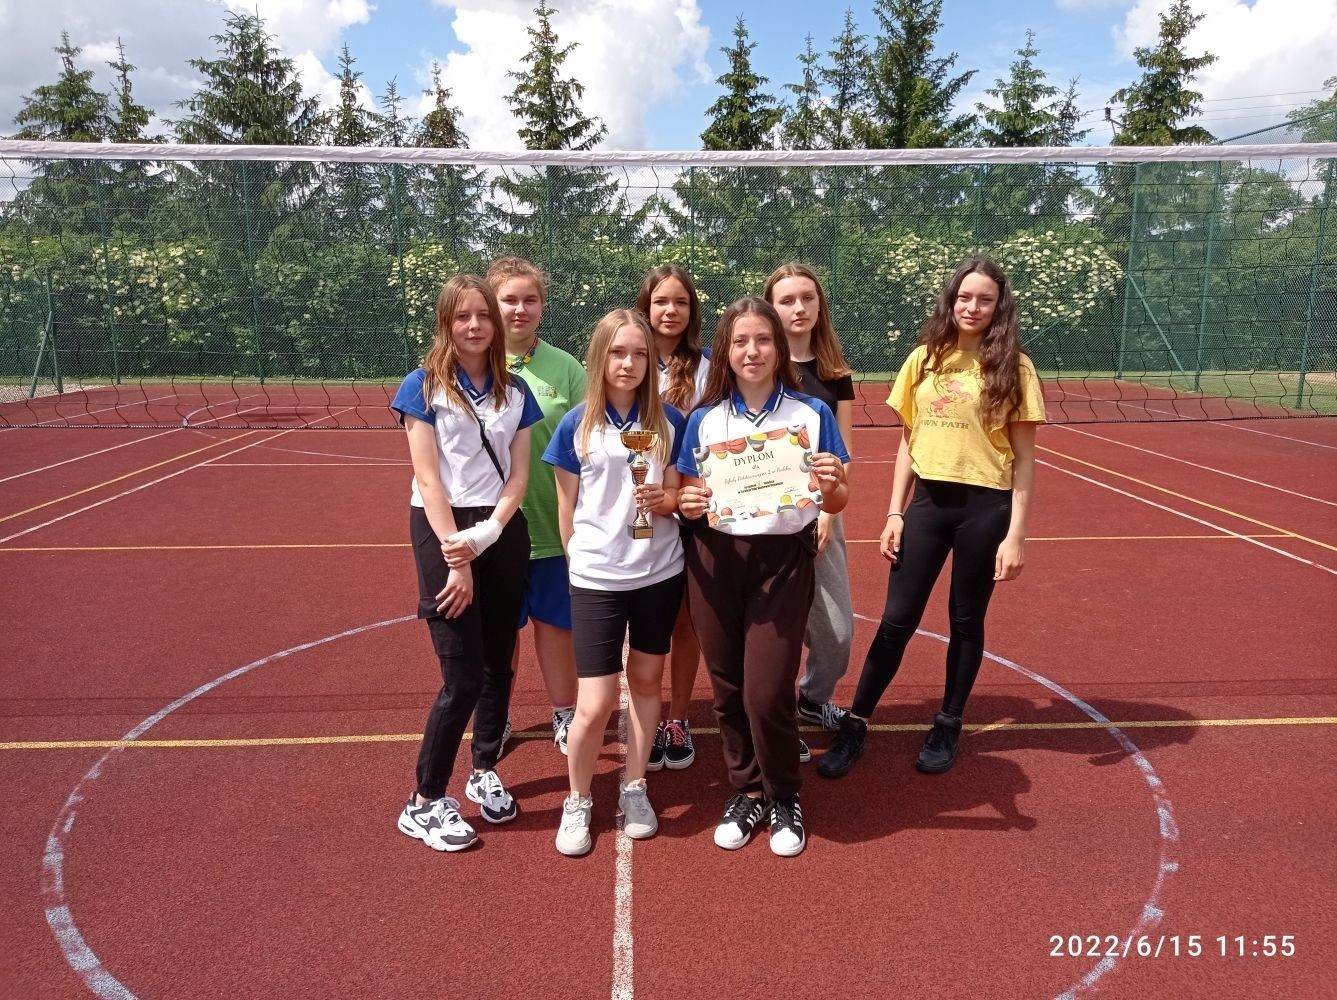 W środę 15 czerwca 2022 r na zaproszenie ZSEiT w Pasłęku, uczniowie naszej szkoły wzięli
udział w Turnieju Piłki Siatkowej i Piłki Nożnej o puchar Dyrektora ZSEiT.
Turniej rozegrano przy sprzyjającej pogodzie na miejscowym Orliku.
Puchar Dyrektora ZSEi T w Piłce Siatkowej zdobyły dziewczęta ze Szkoły Podstawowej w
Rychlikach, drużyna naszych dziewcząt zajęła 2 miejsce.
Natomiast chłopcy uplasowali się na 3 miejscu.
Zawodnikom i zawodniczkom gratulujemy.